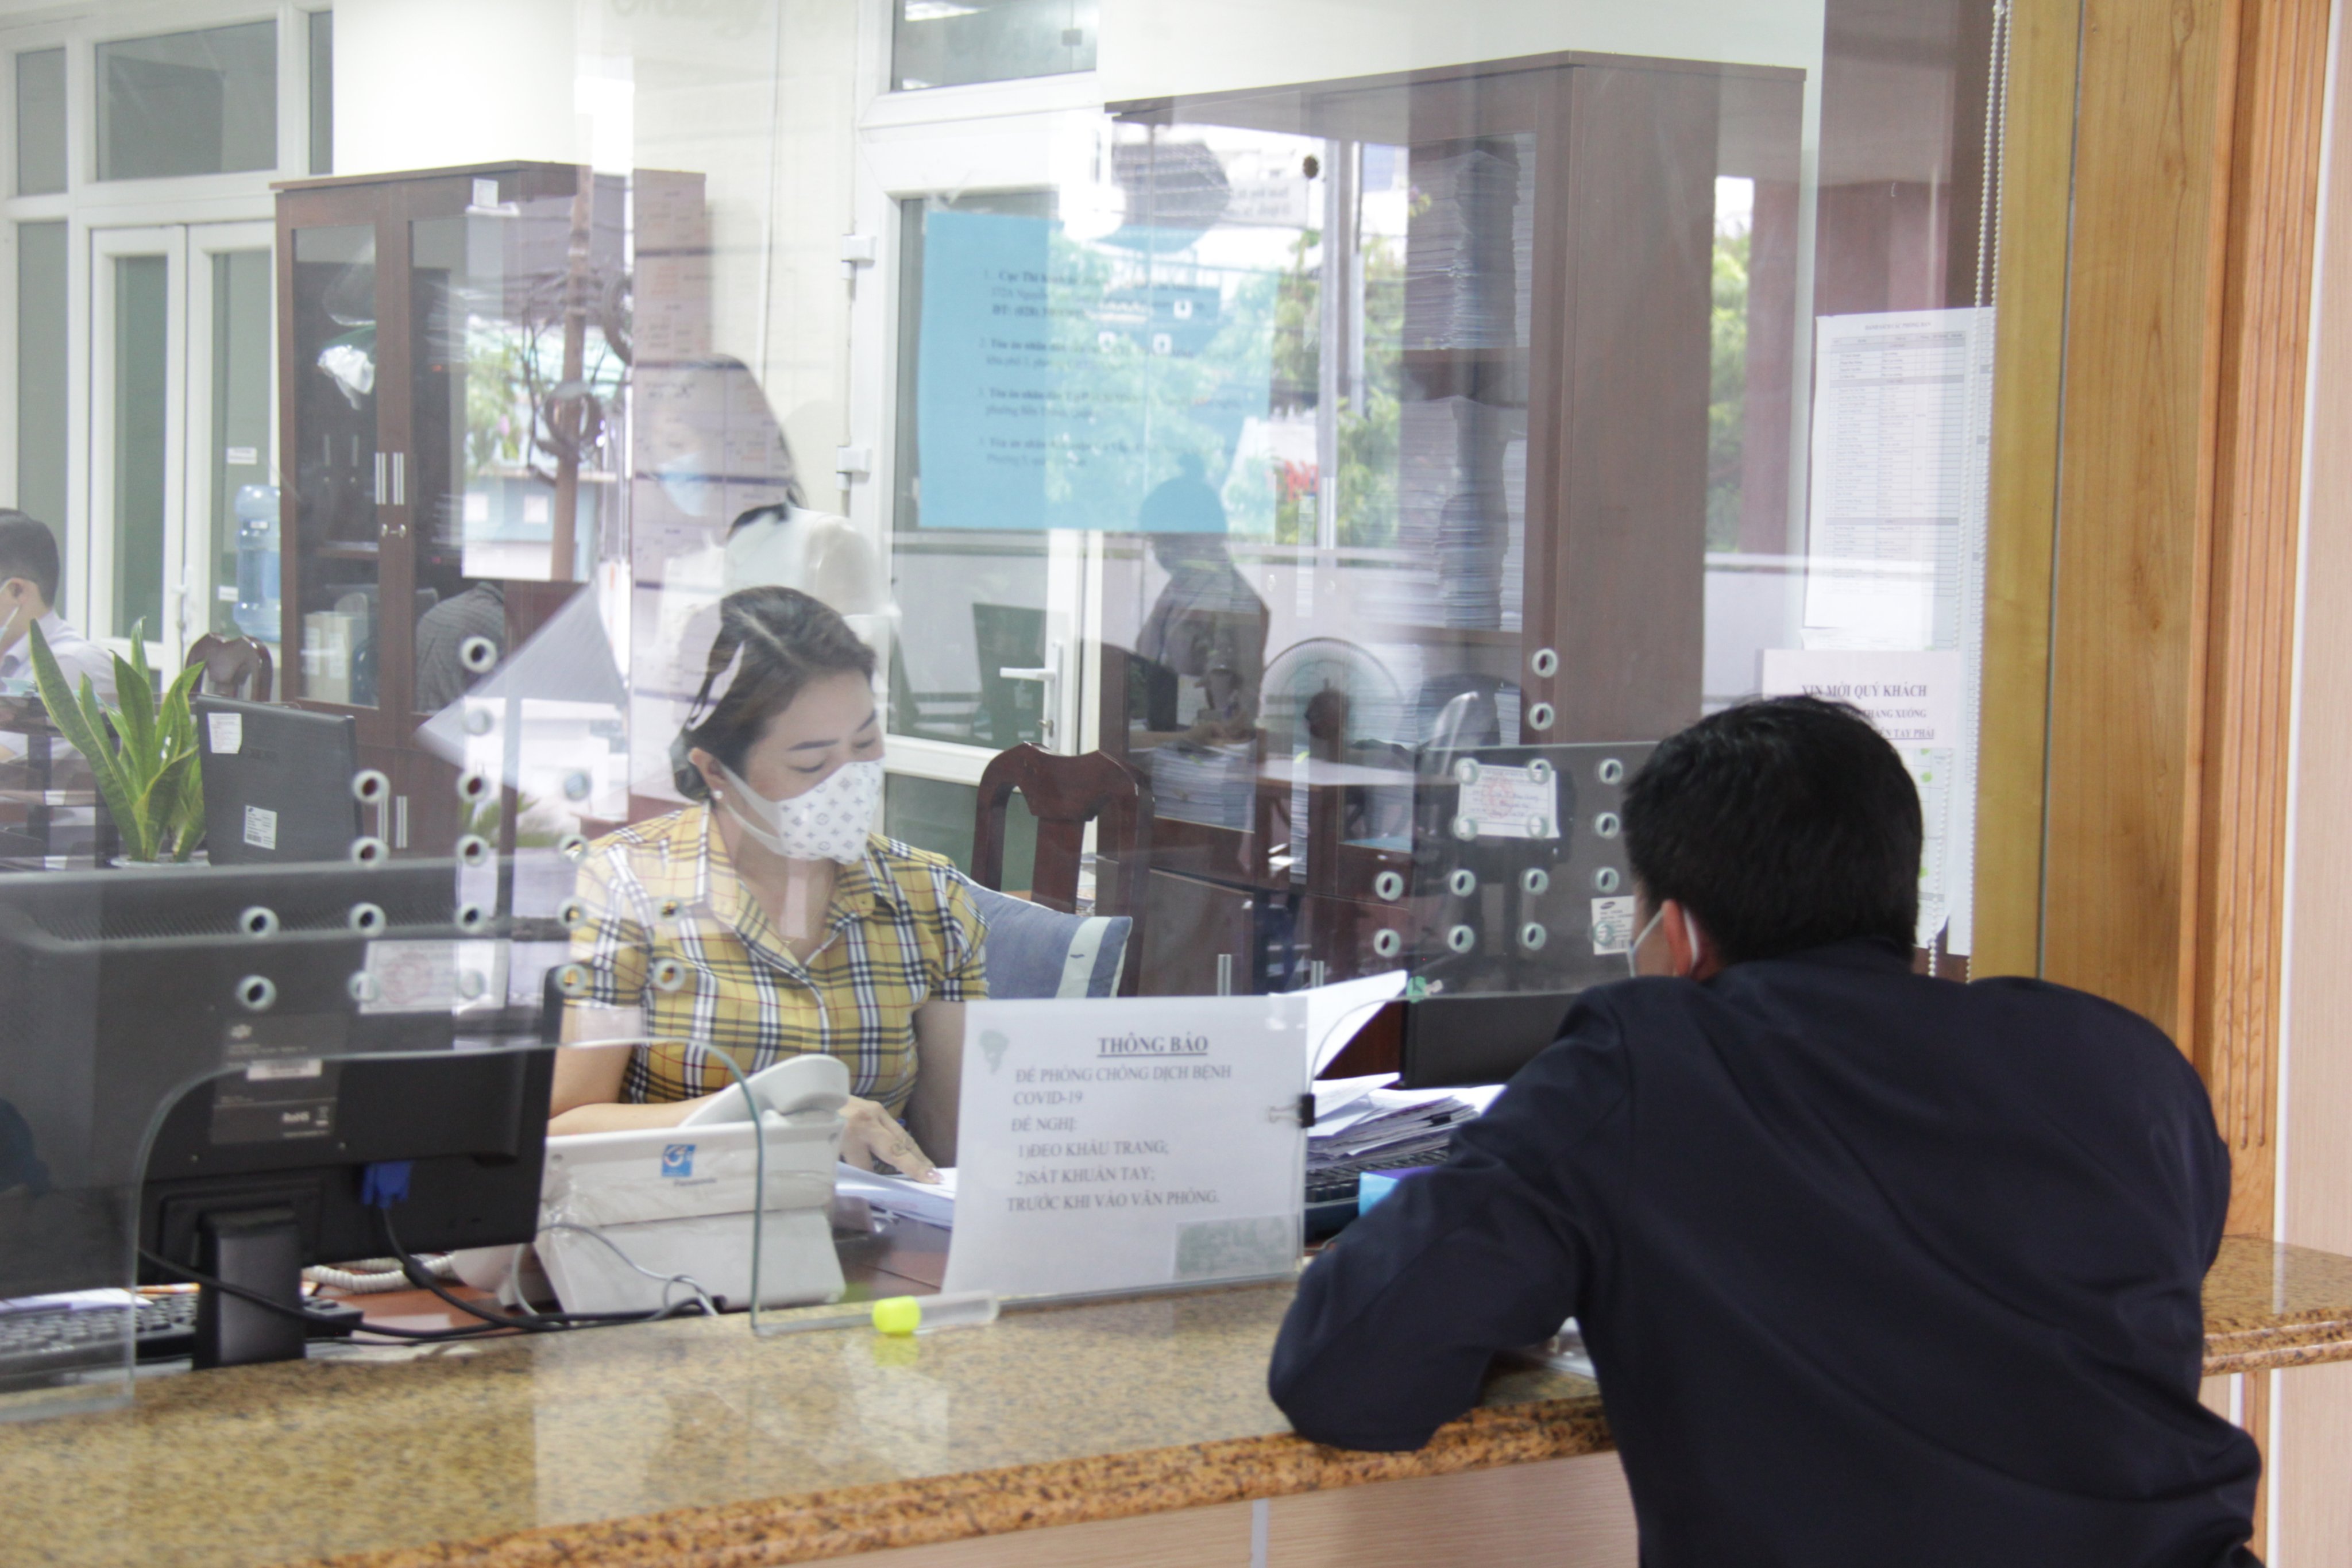 THADS Thành phố Hồ Chí Minh: Đổi mới, nâng cao chất lượng công tác